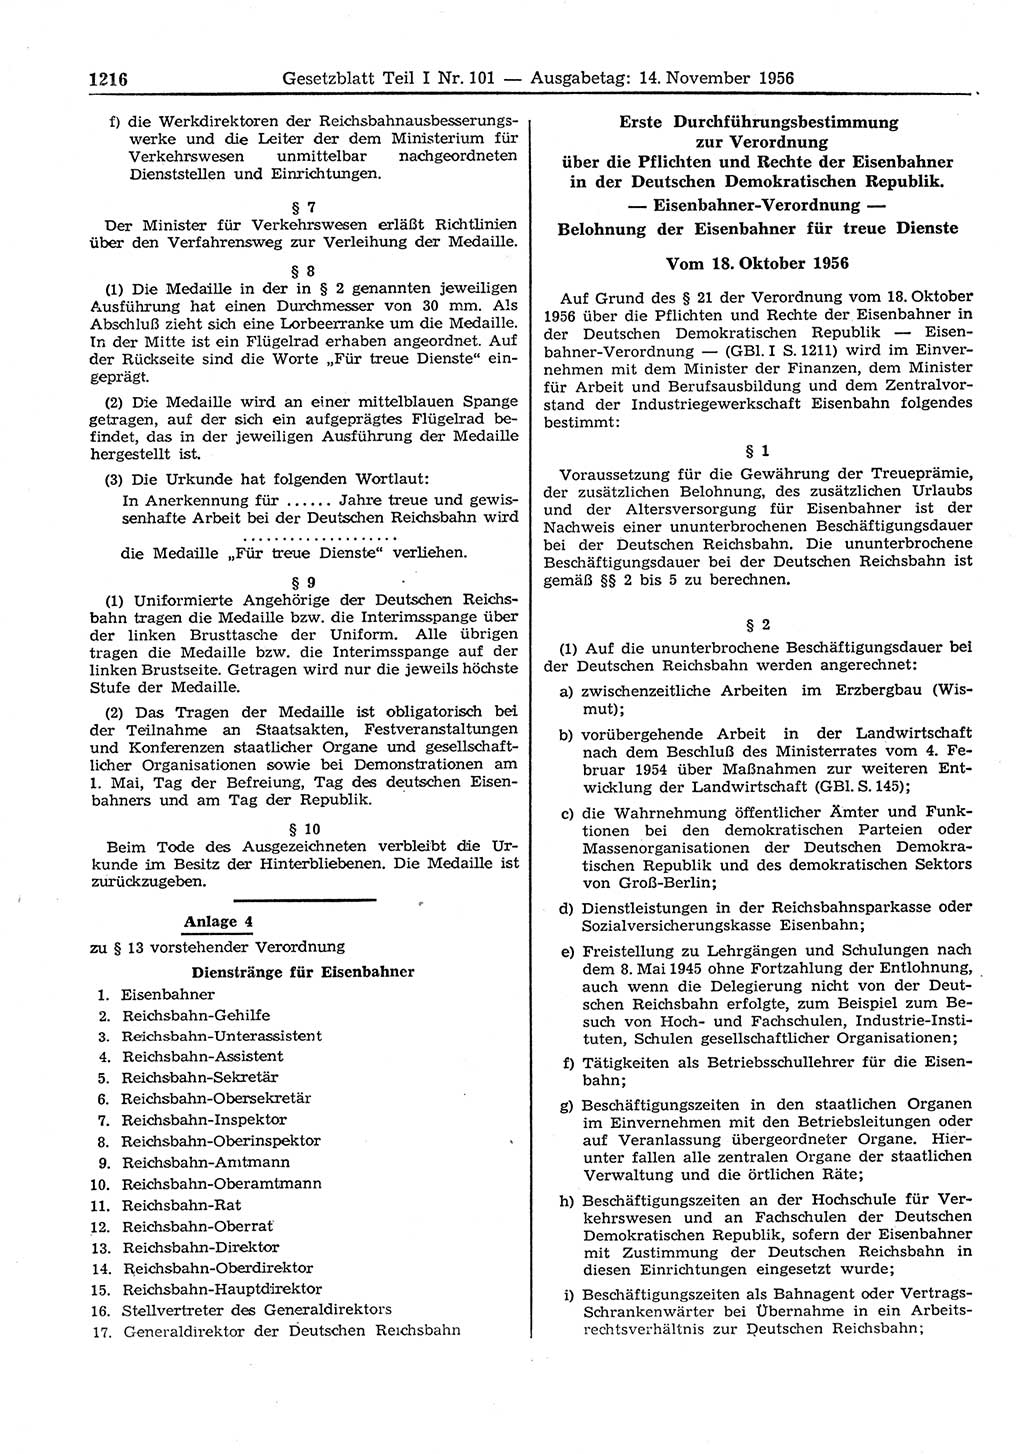 Gesetzblatt (GBl.) der Deutschen Demokratischen Republik (DDR) Teil Ⅰ 1956, Seite 1216 (GBl. DDR Ⅰ 1956, S. 1216)